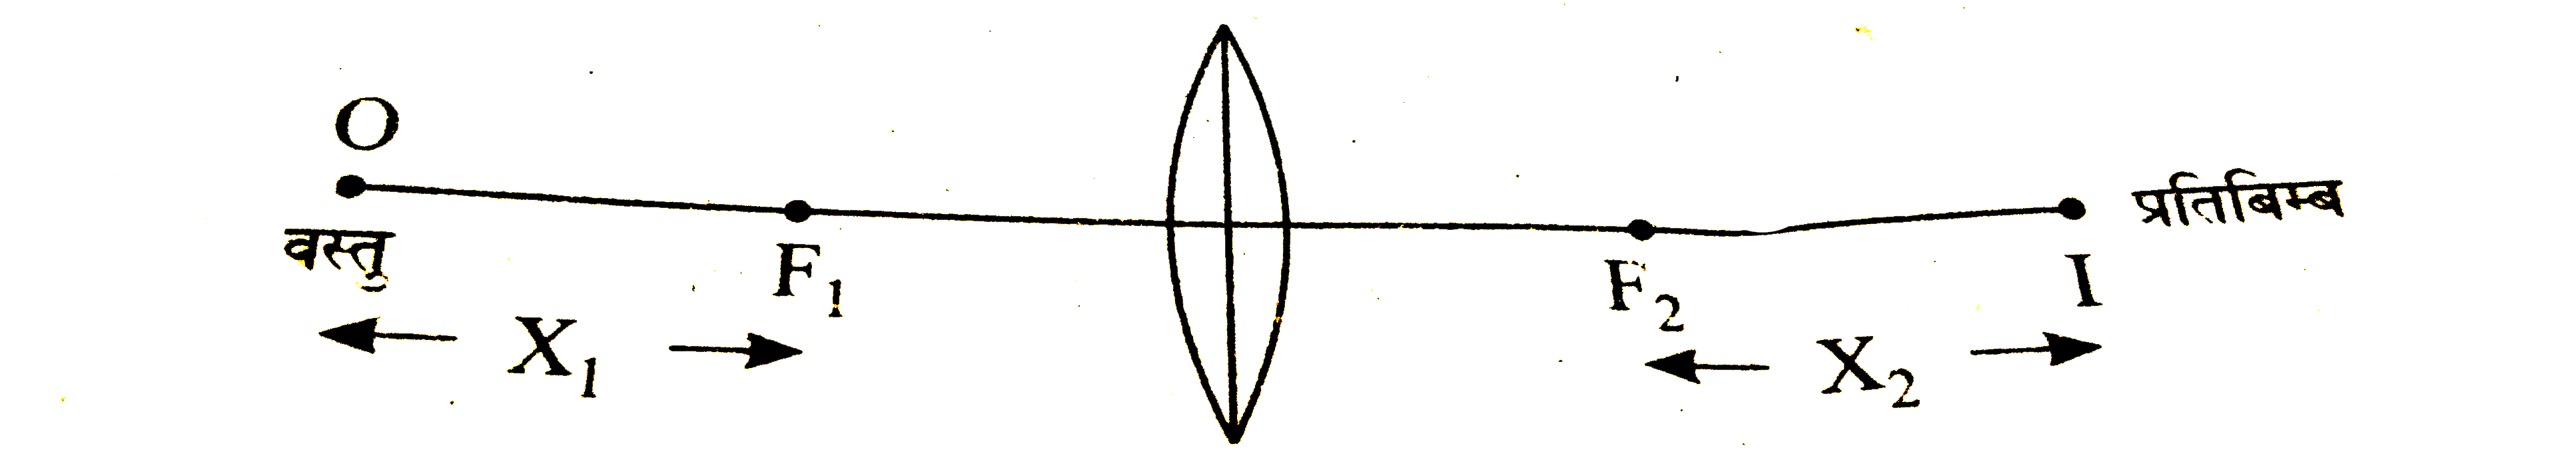 दर्शाये गए चित्र के अनुशार f फोकस दुरी वाले लेंस के दृतीये फोकस से प्रतिबिम्ब की न्यूनतम दुरी X(2) का मान है -